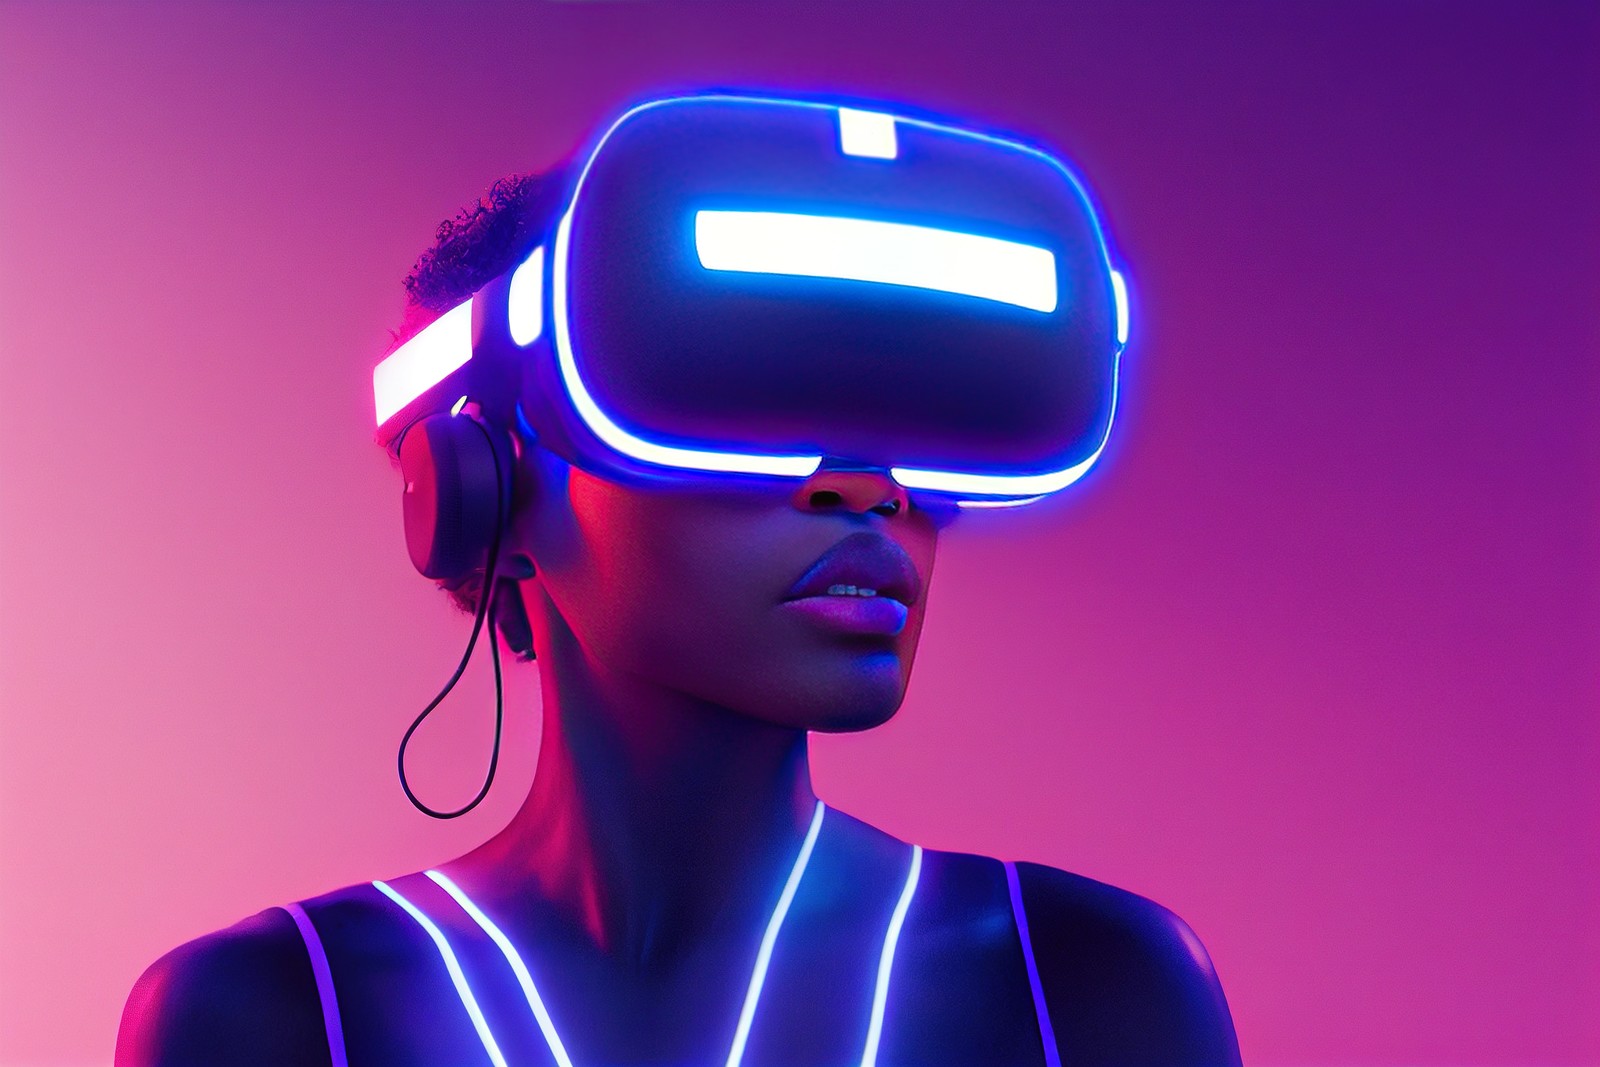 图片展示了一位女性戴着虚拟现实头盔和耳机，脸部和胸前有发光的线条，背景是紫色调，科技感十足。